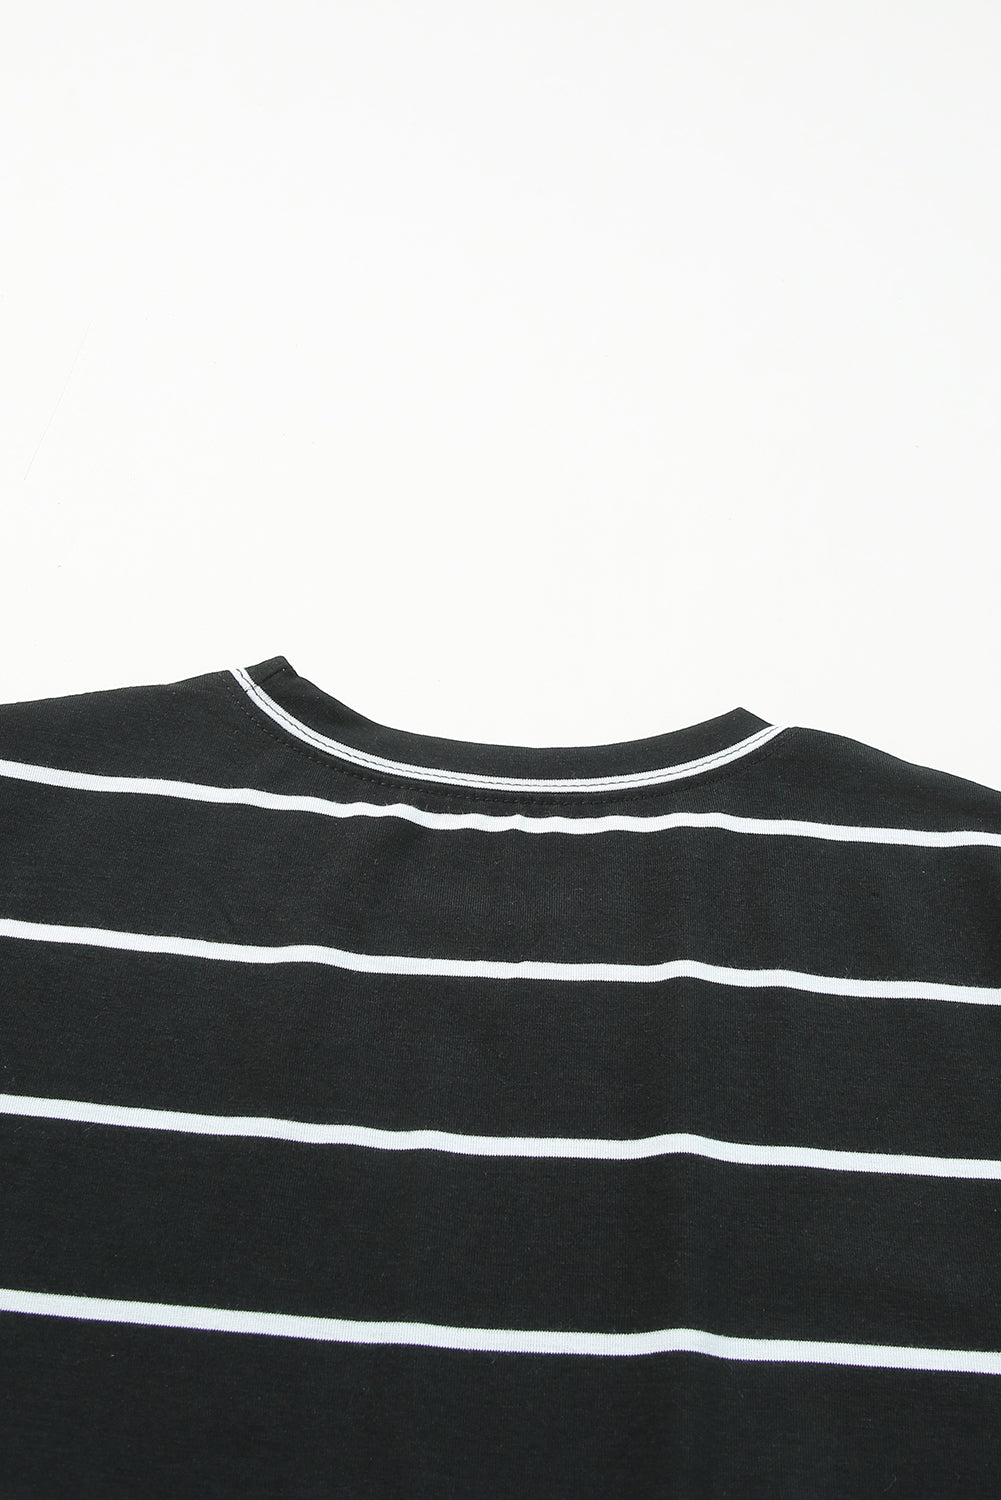 T-shirt nera con stampa a righe girocollo